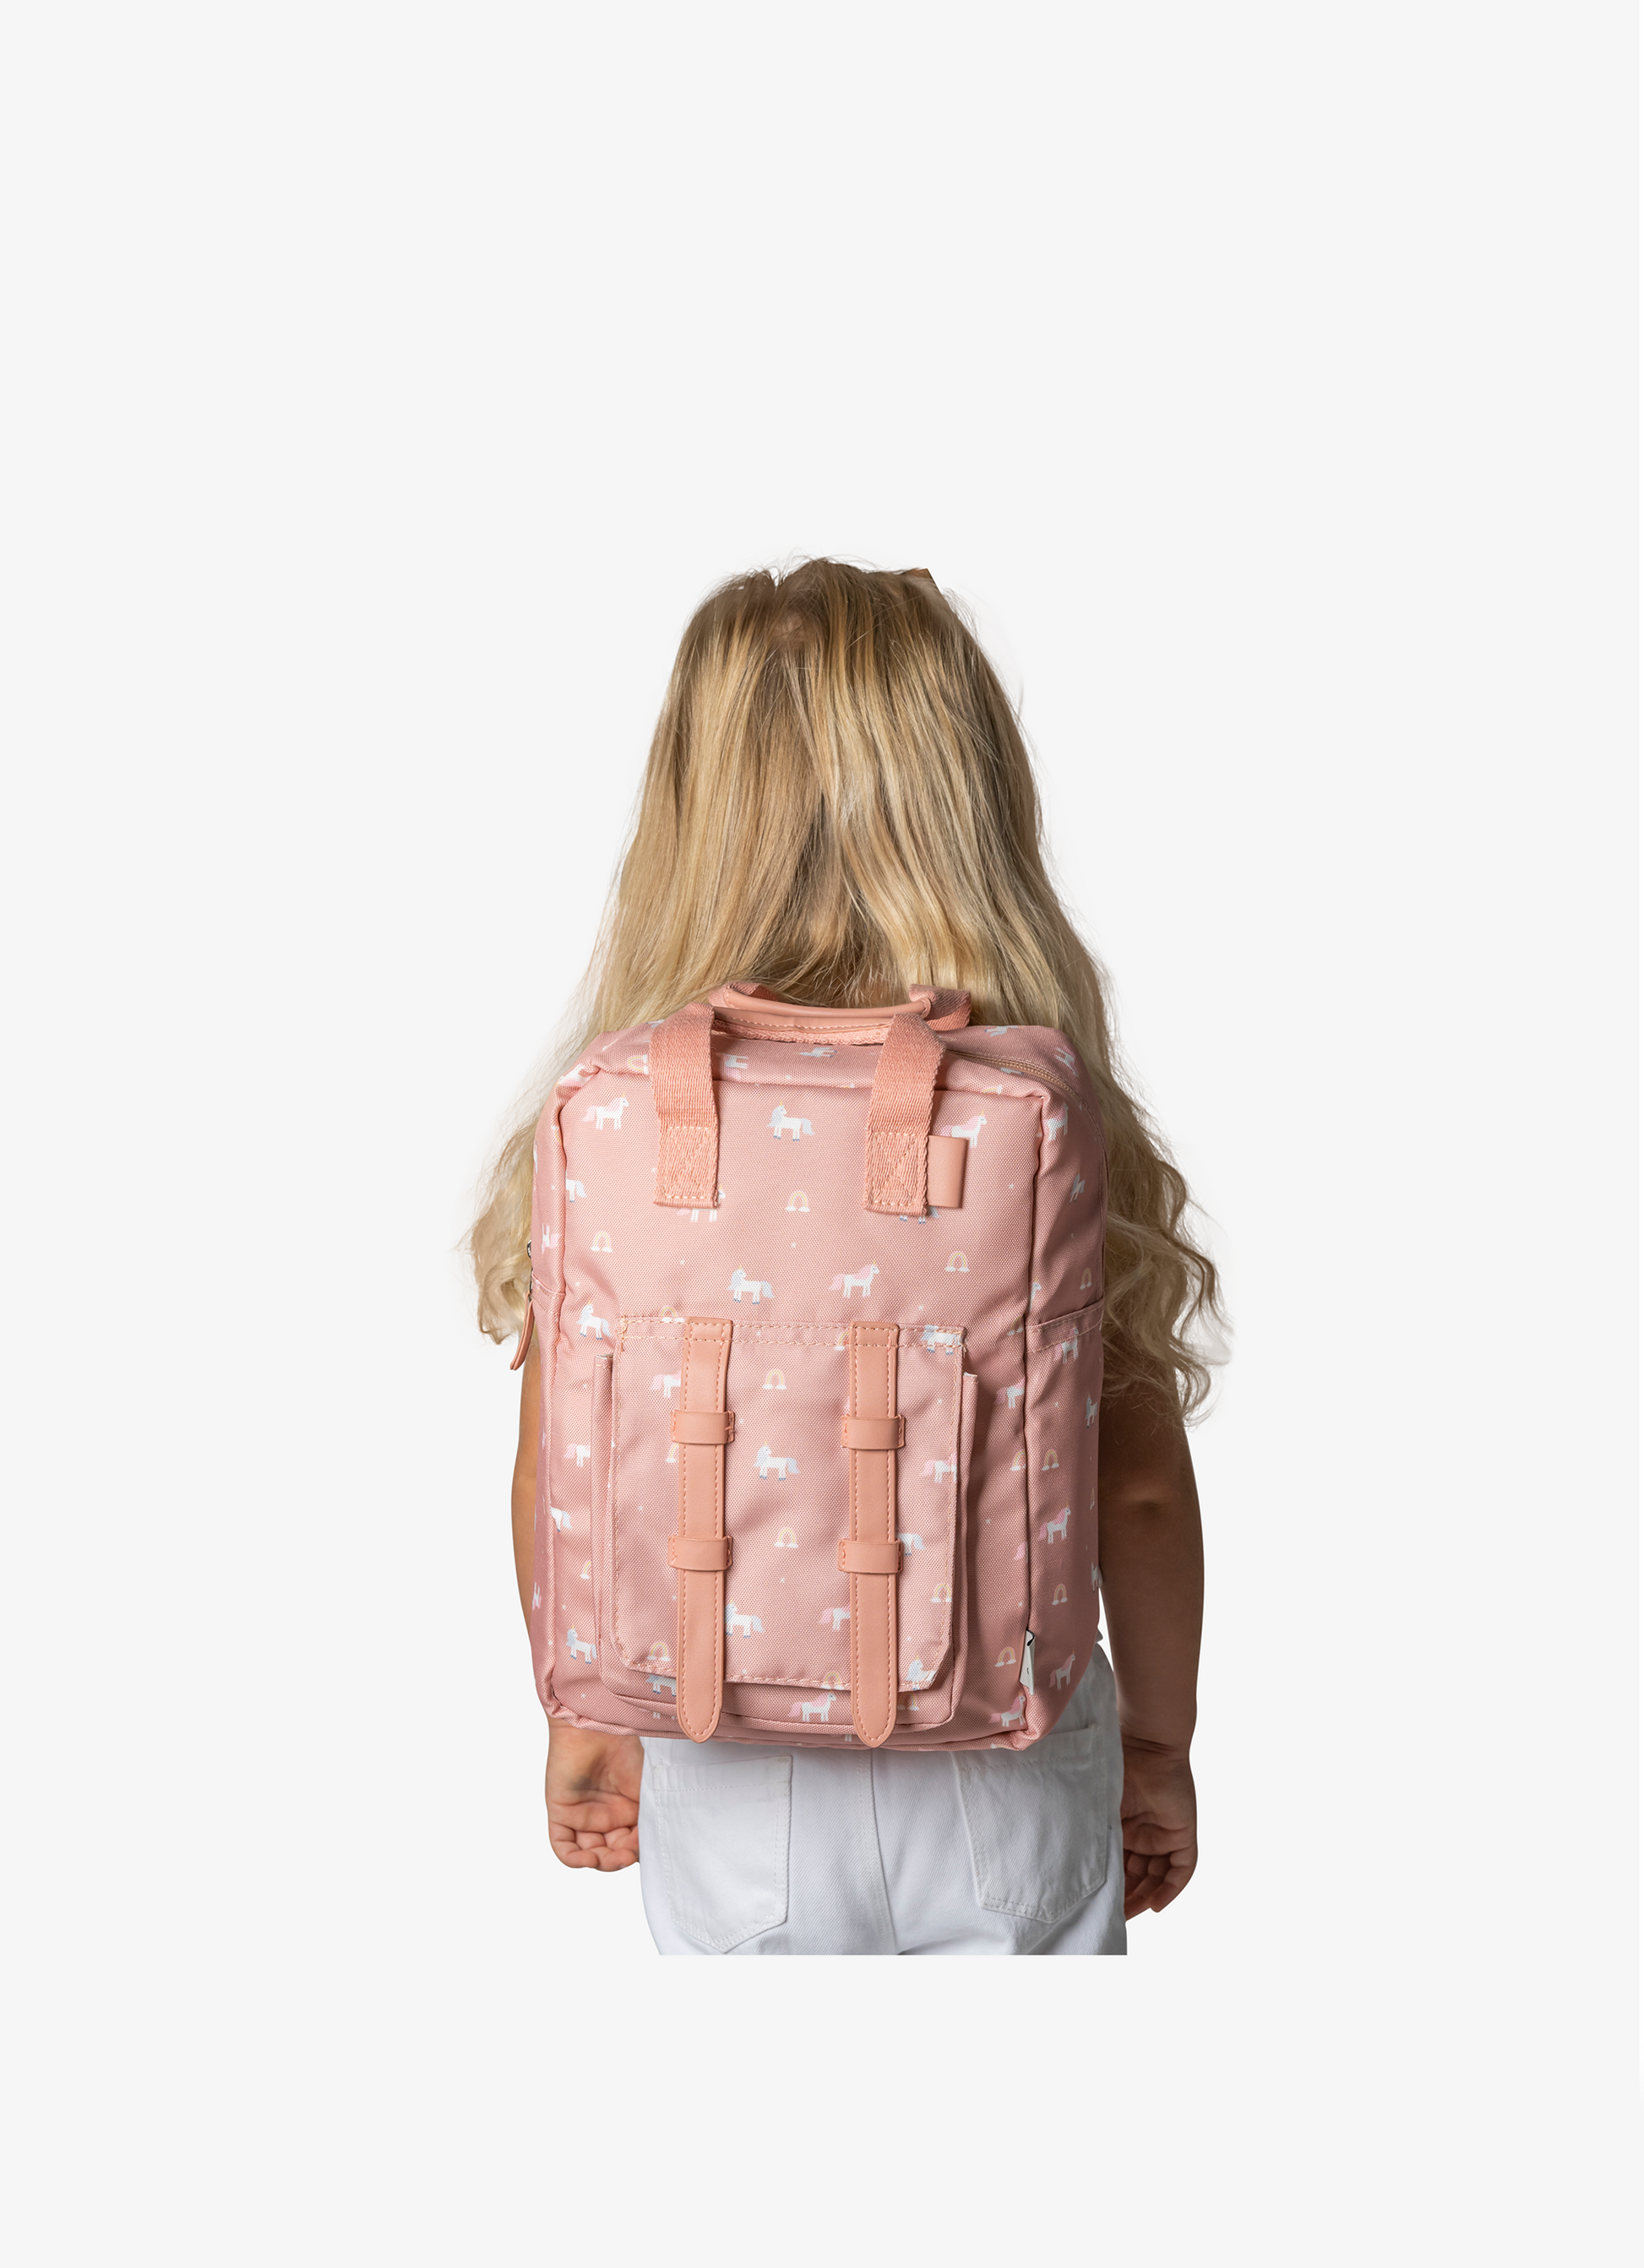 Citron Kids Backpack - Unicorn - Laadlee